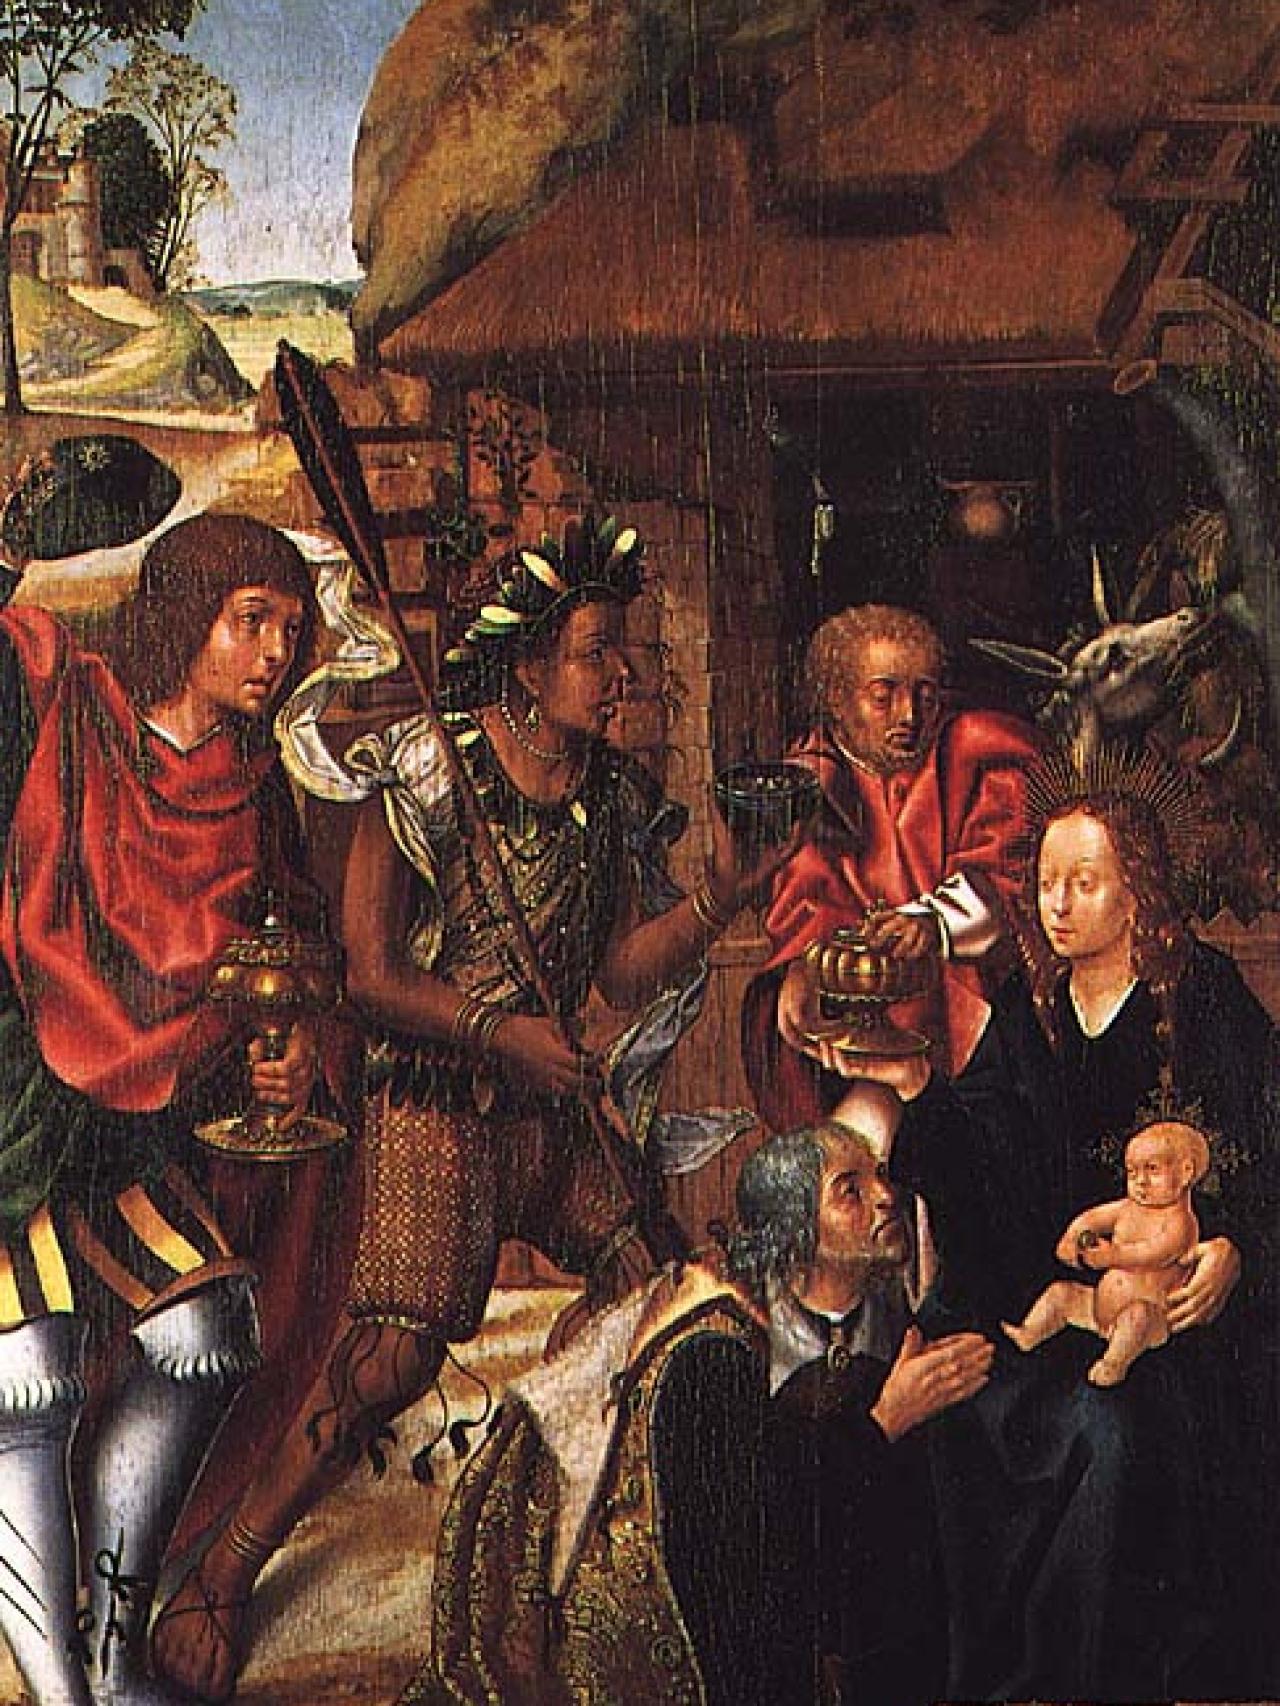 La Adoración de los Reyes Magos (Adoração dos Magos, 1501-06), pintado por Vasco Fernandes (Grão Vasco).